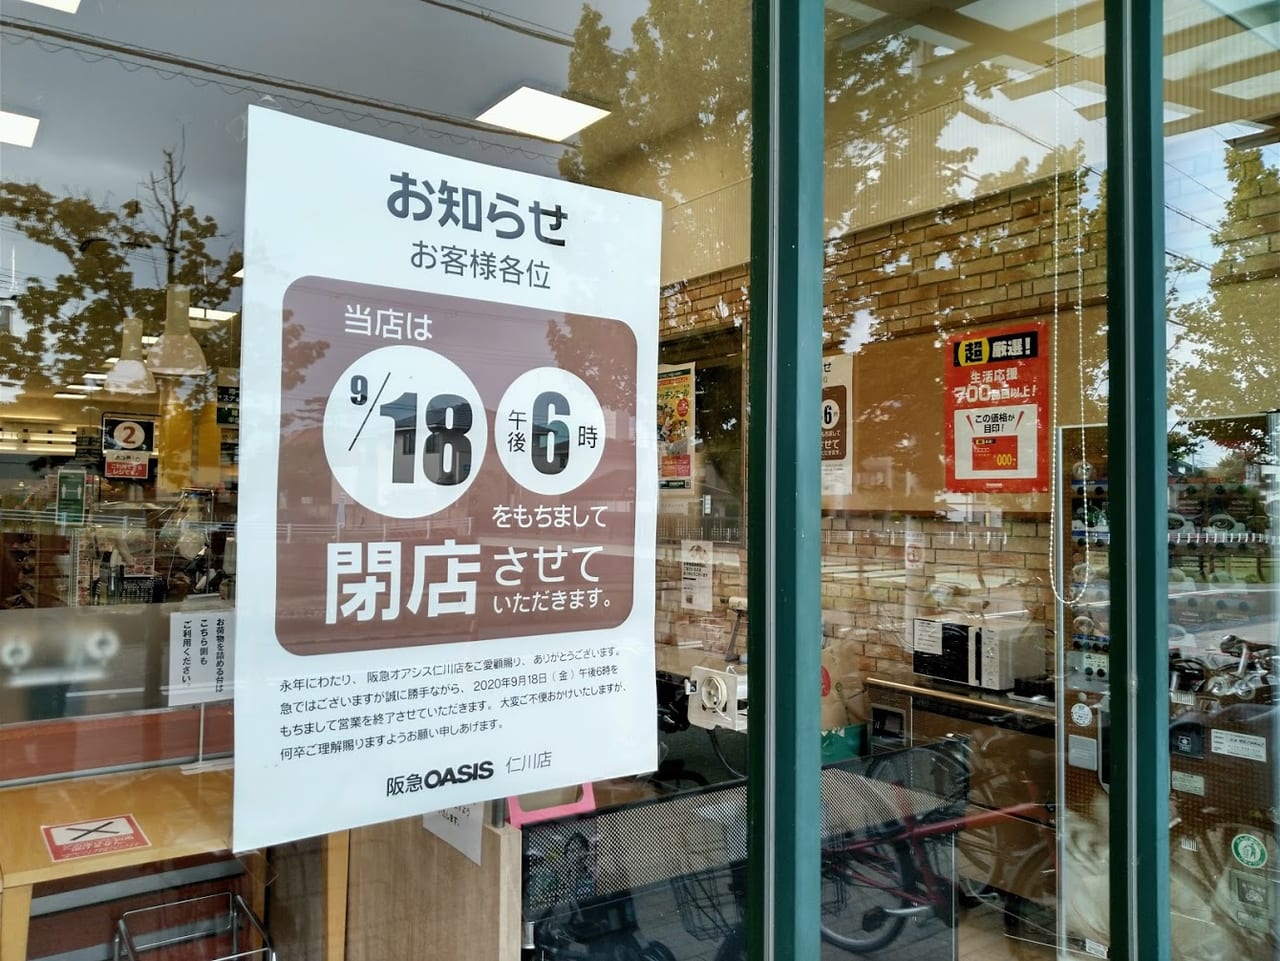 宝塚市 阪急オアシス仁川店が9月18日に閉店するそうです 号外net 宝塚市 川西市